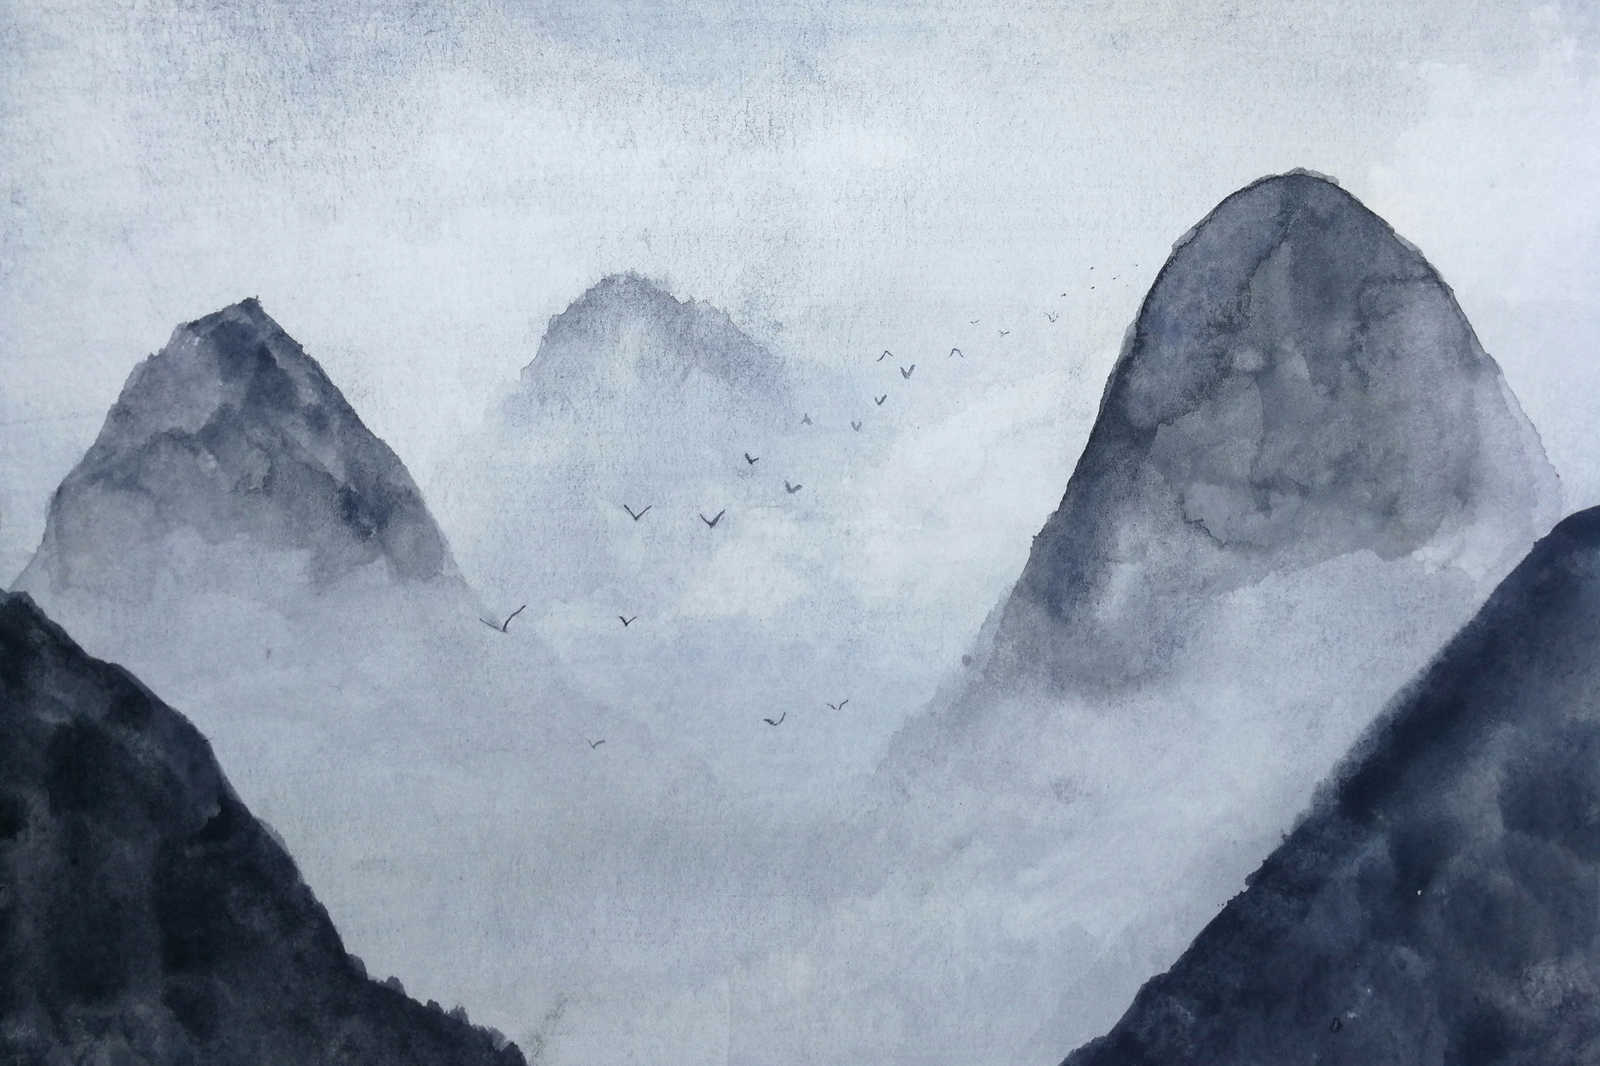             Canvas Berglandschap Aquarel - 0,90 m x 0,60 m
        